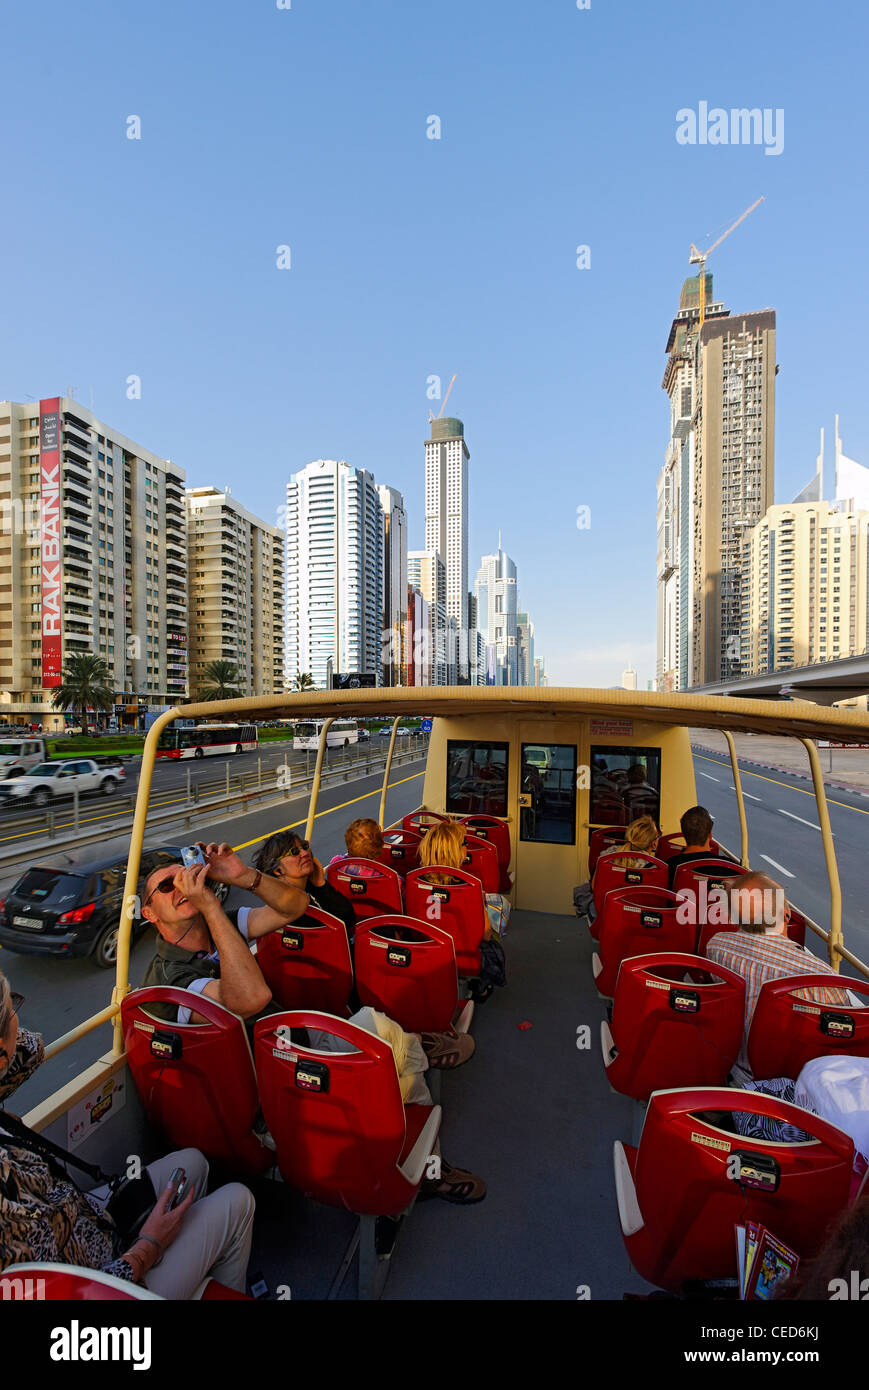 Les touristes équitation de l'BIG BUS sur la route Sheikh Zayed, tours, gratte-ciel, d'hôtels, l'architecture moderne, du quartier financier, Dubaï Banque D'Images